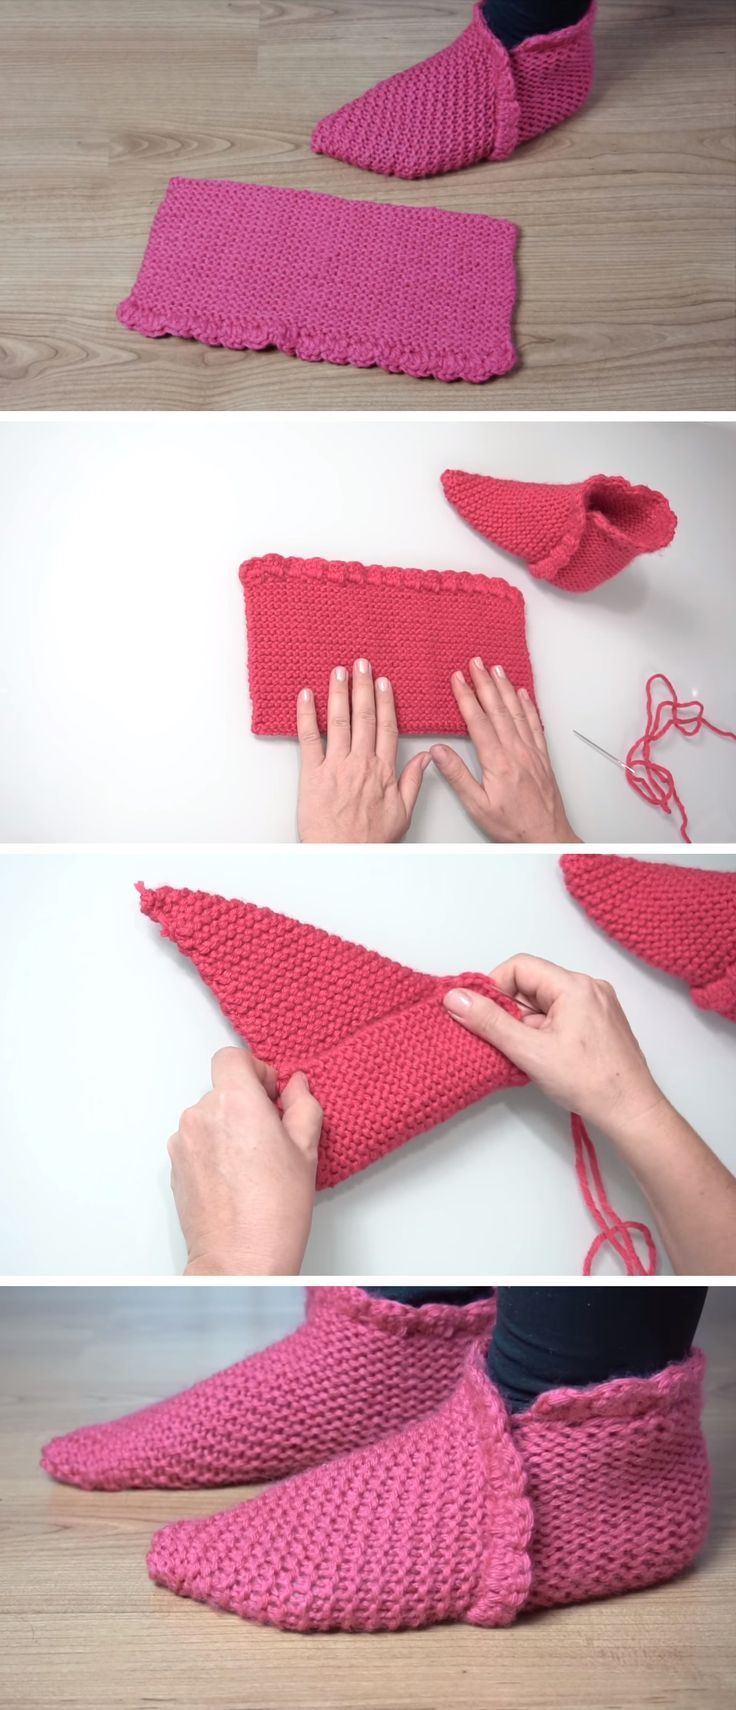 Simple-slippers-for-crochet-Crochet-Simple-slippers-socksdesign.jpg